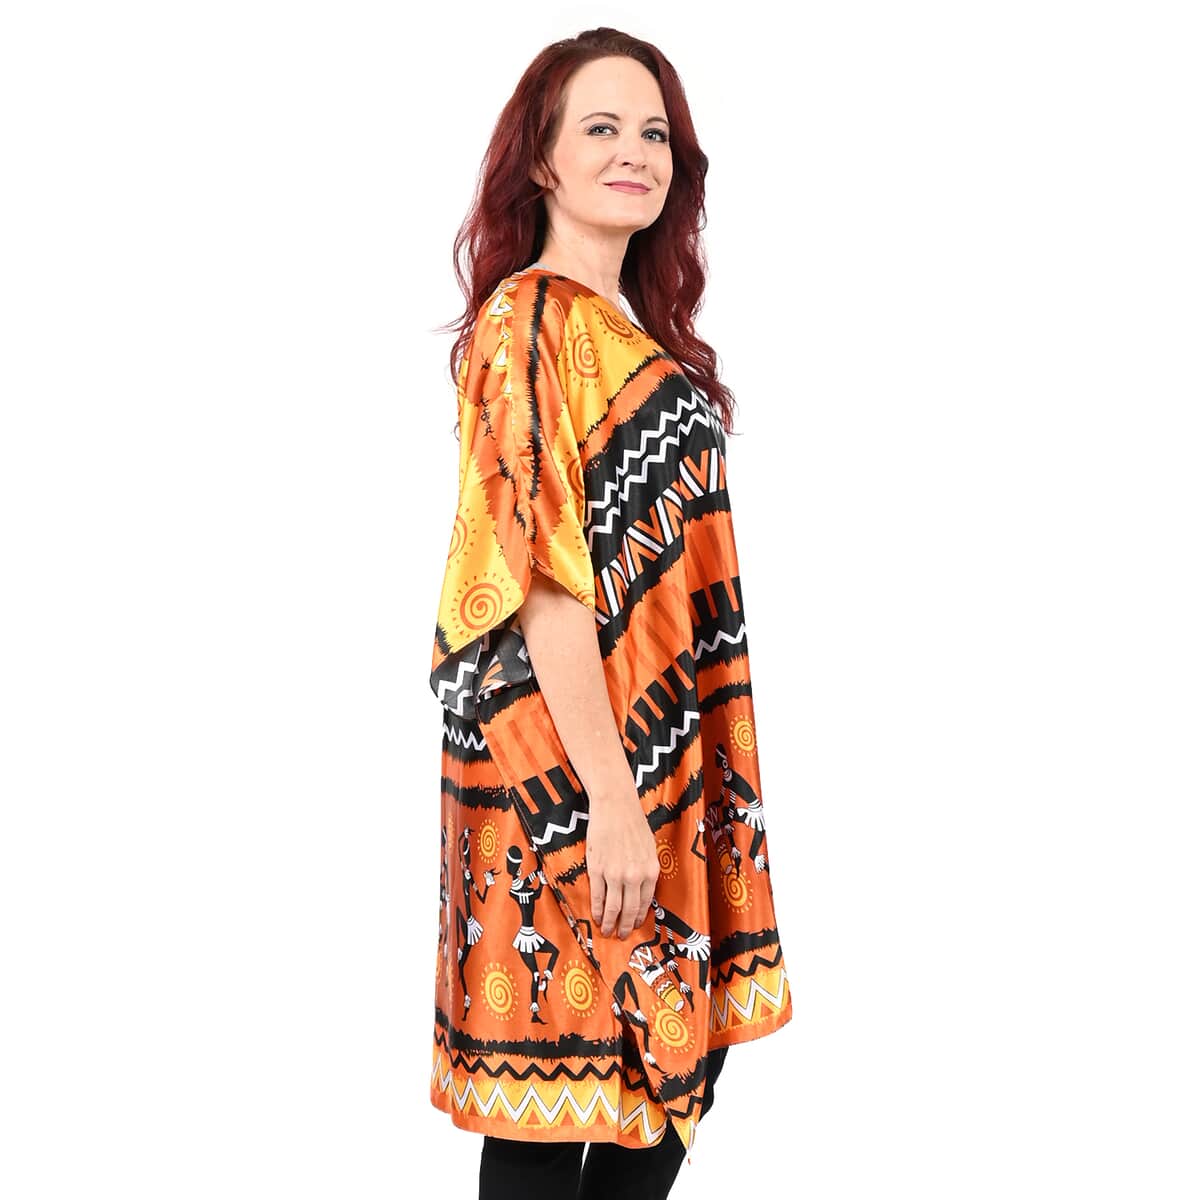 Winlar Orange Tribal Print V-Neck Short Satin Kaftan - One Size Fits Most image number 2